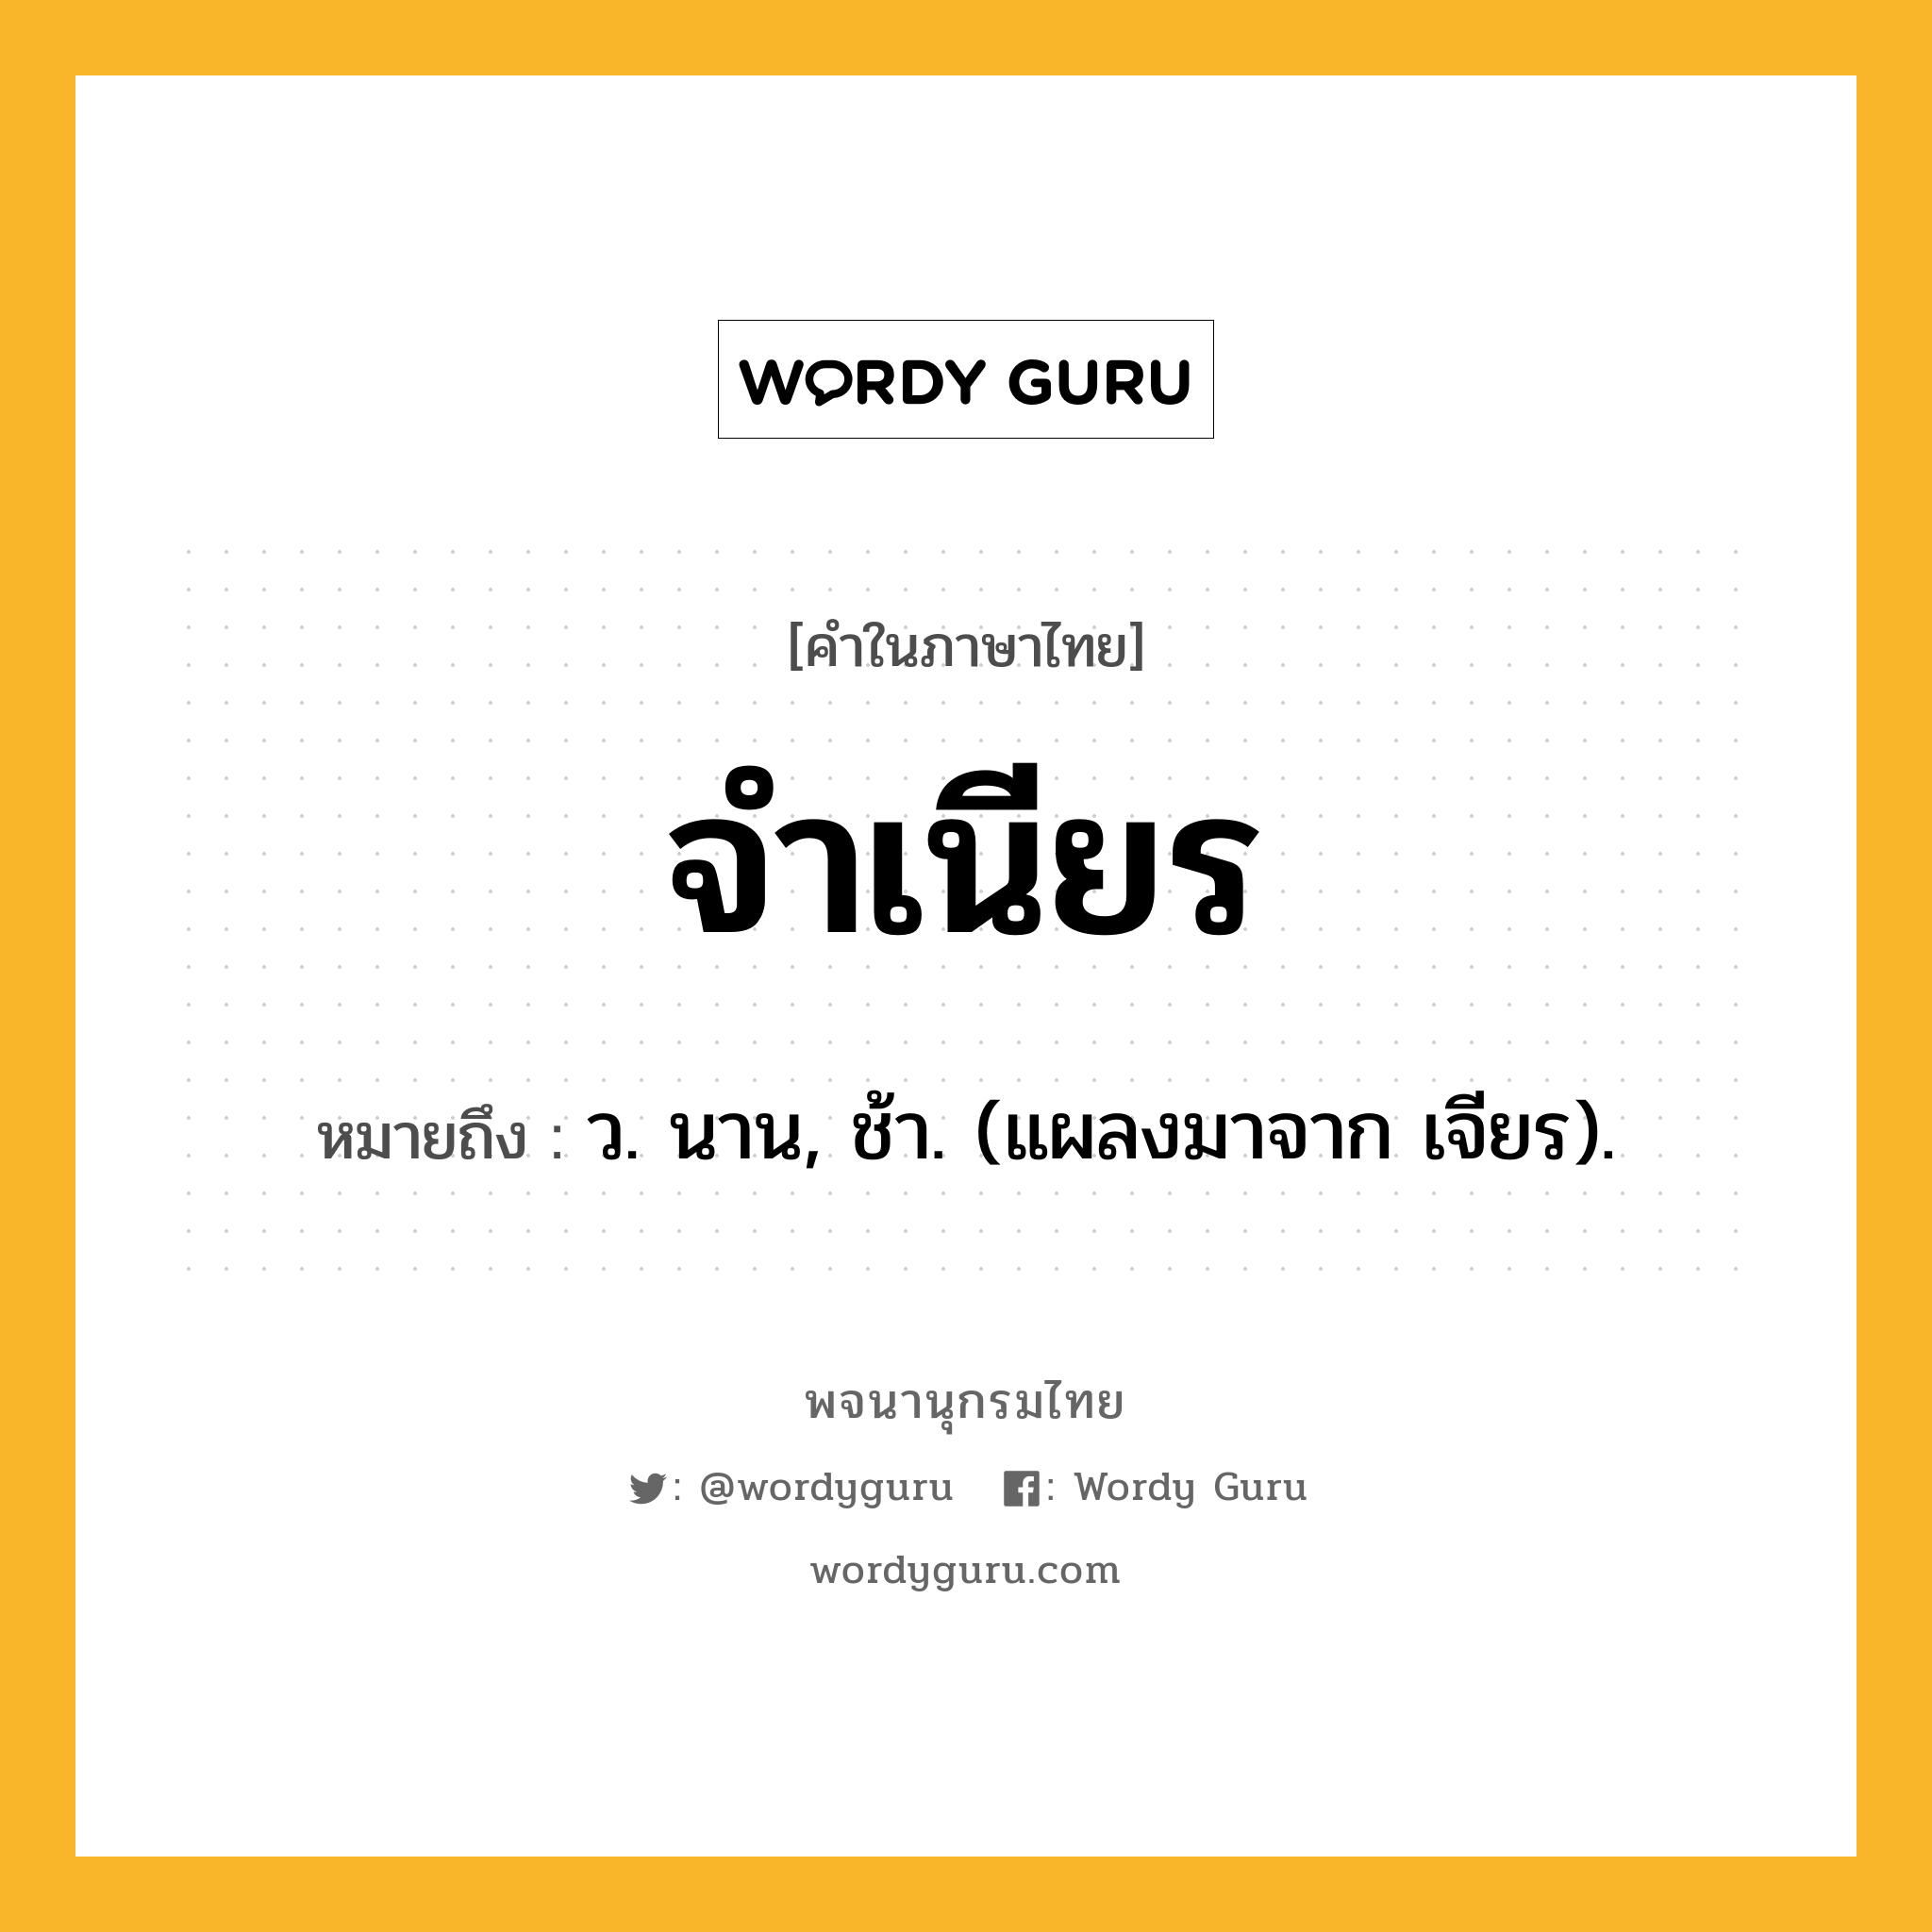 จำเนียร หมายถึงอะไร?, คำในภาษาไทย จำเนียร หมายถึง ว. นาน, ช้า. (แผลงมาจาก เจียร).